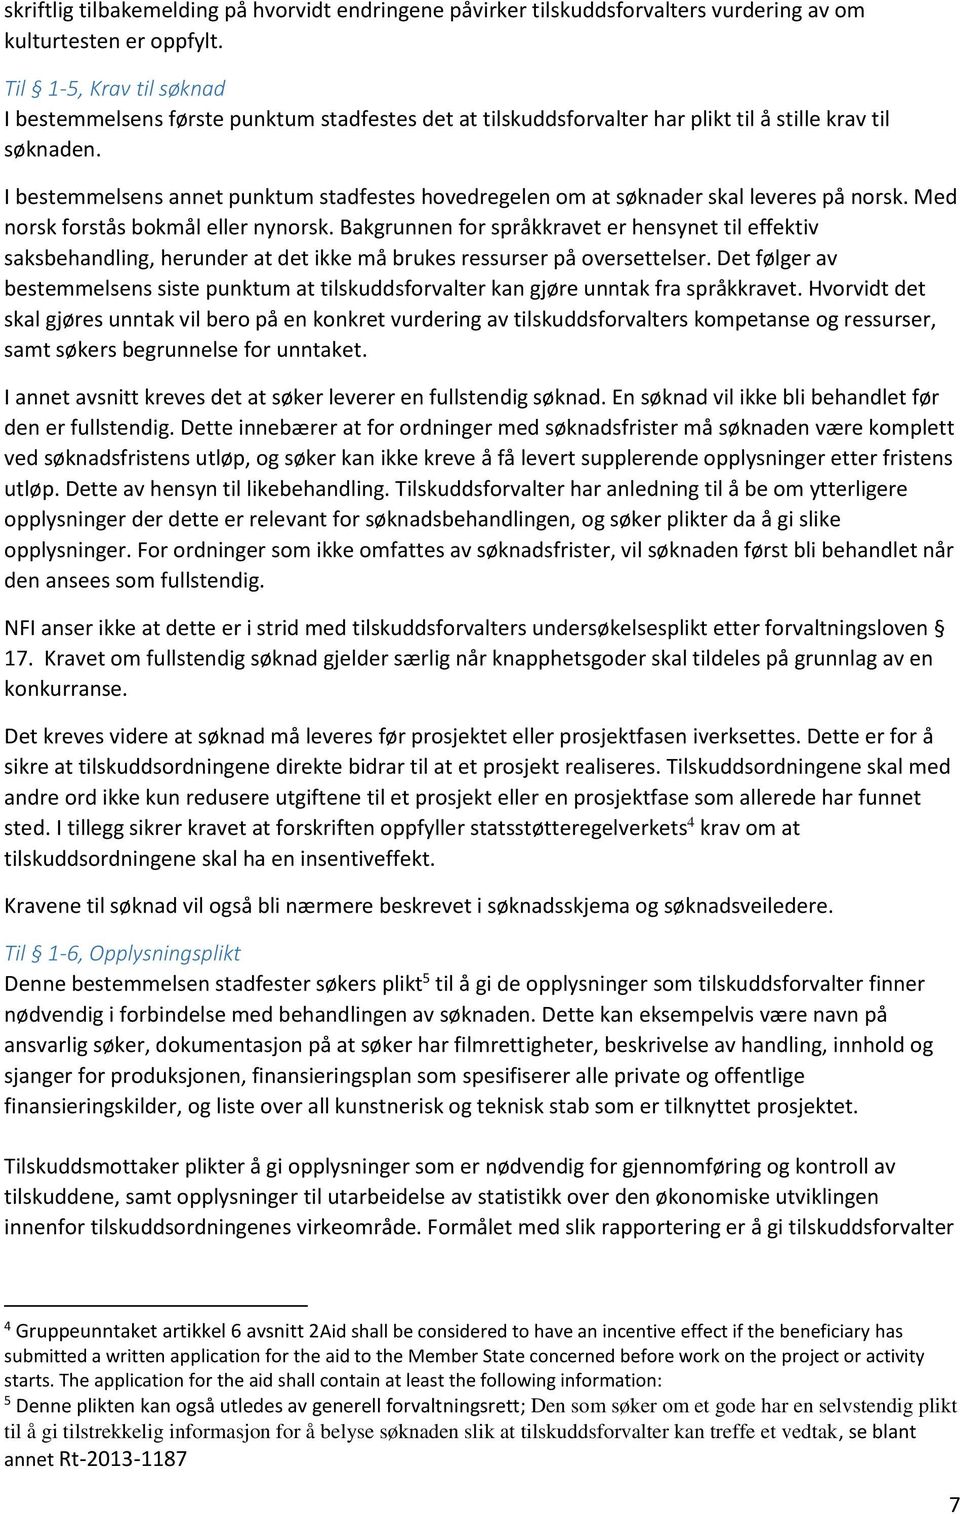 I bestemmelsens annet punktum stadfestes hovedregelen om at søknader skal leveres på norsk. Med norsk forstås bokmål eller nynorsk.